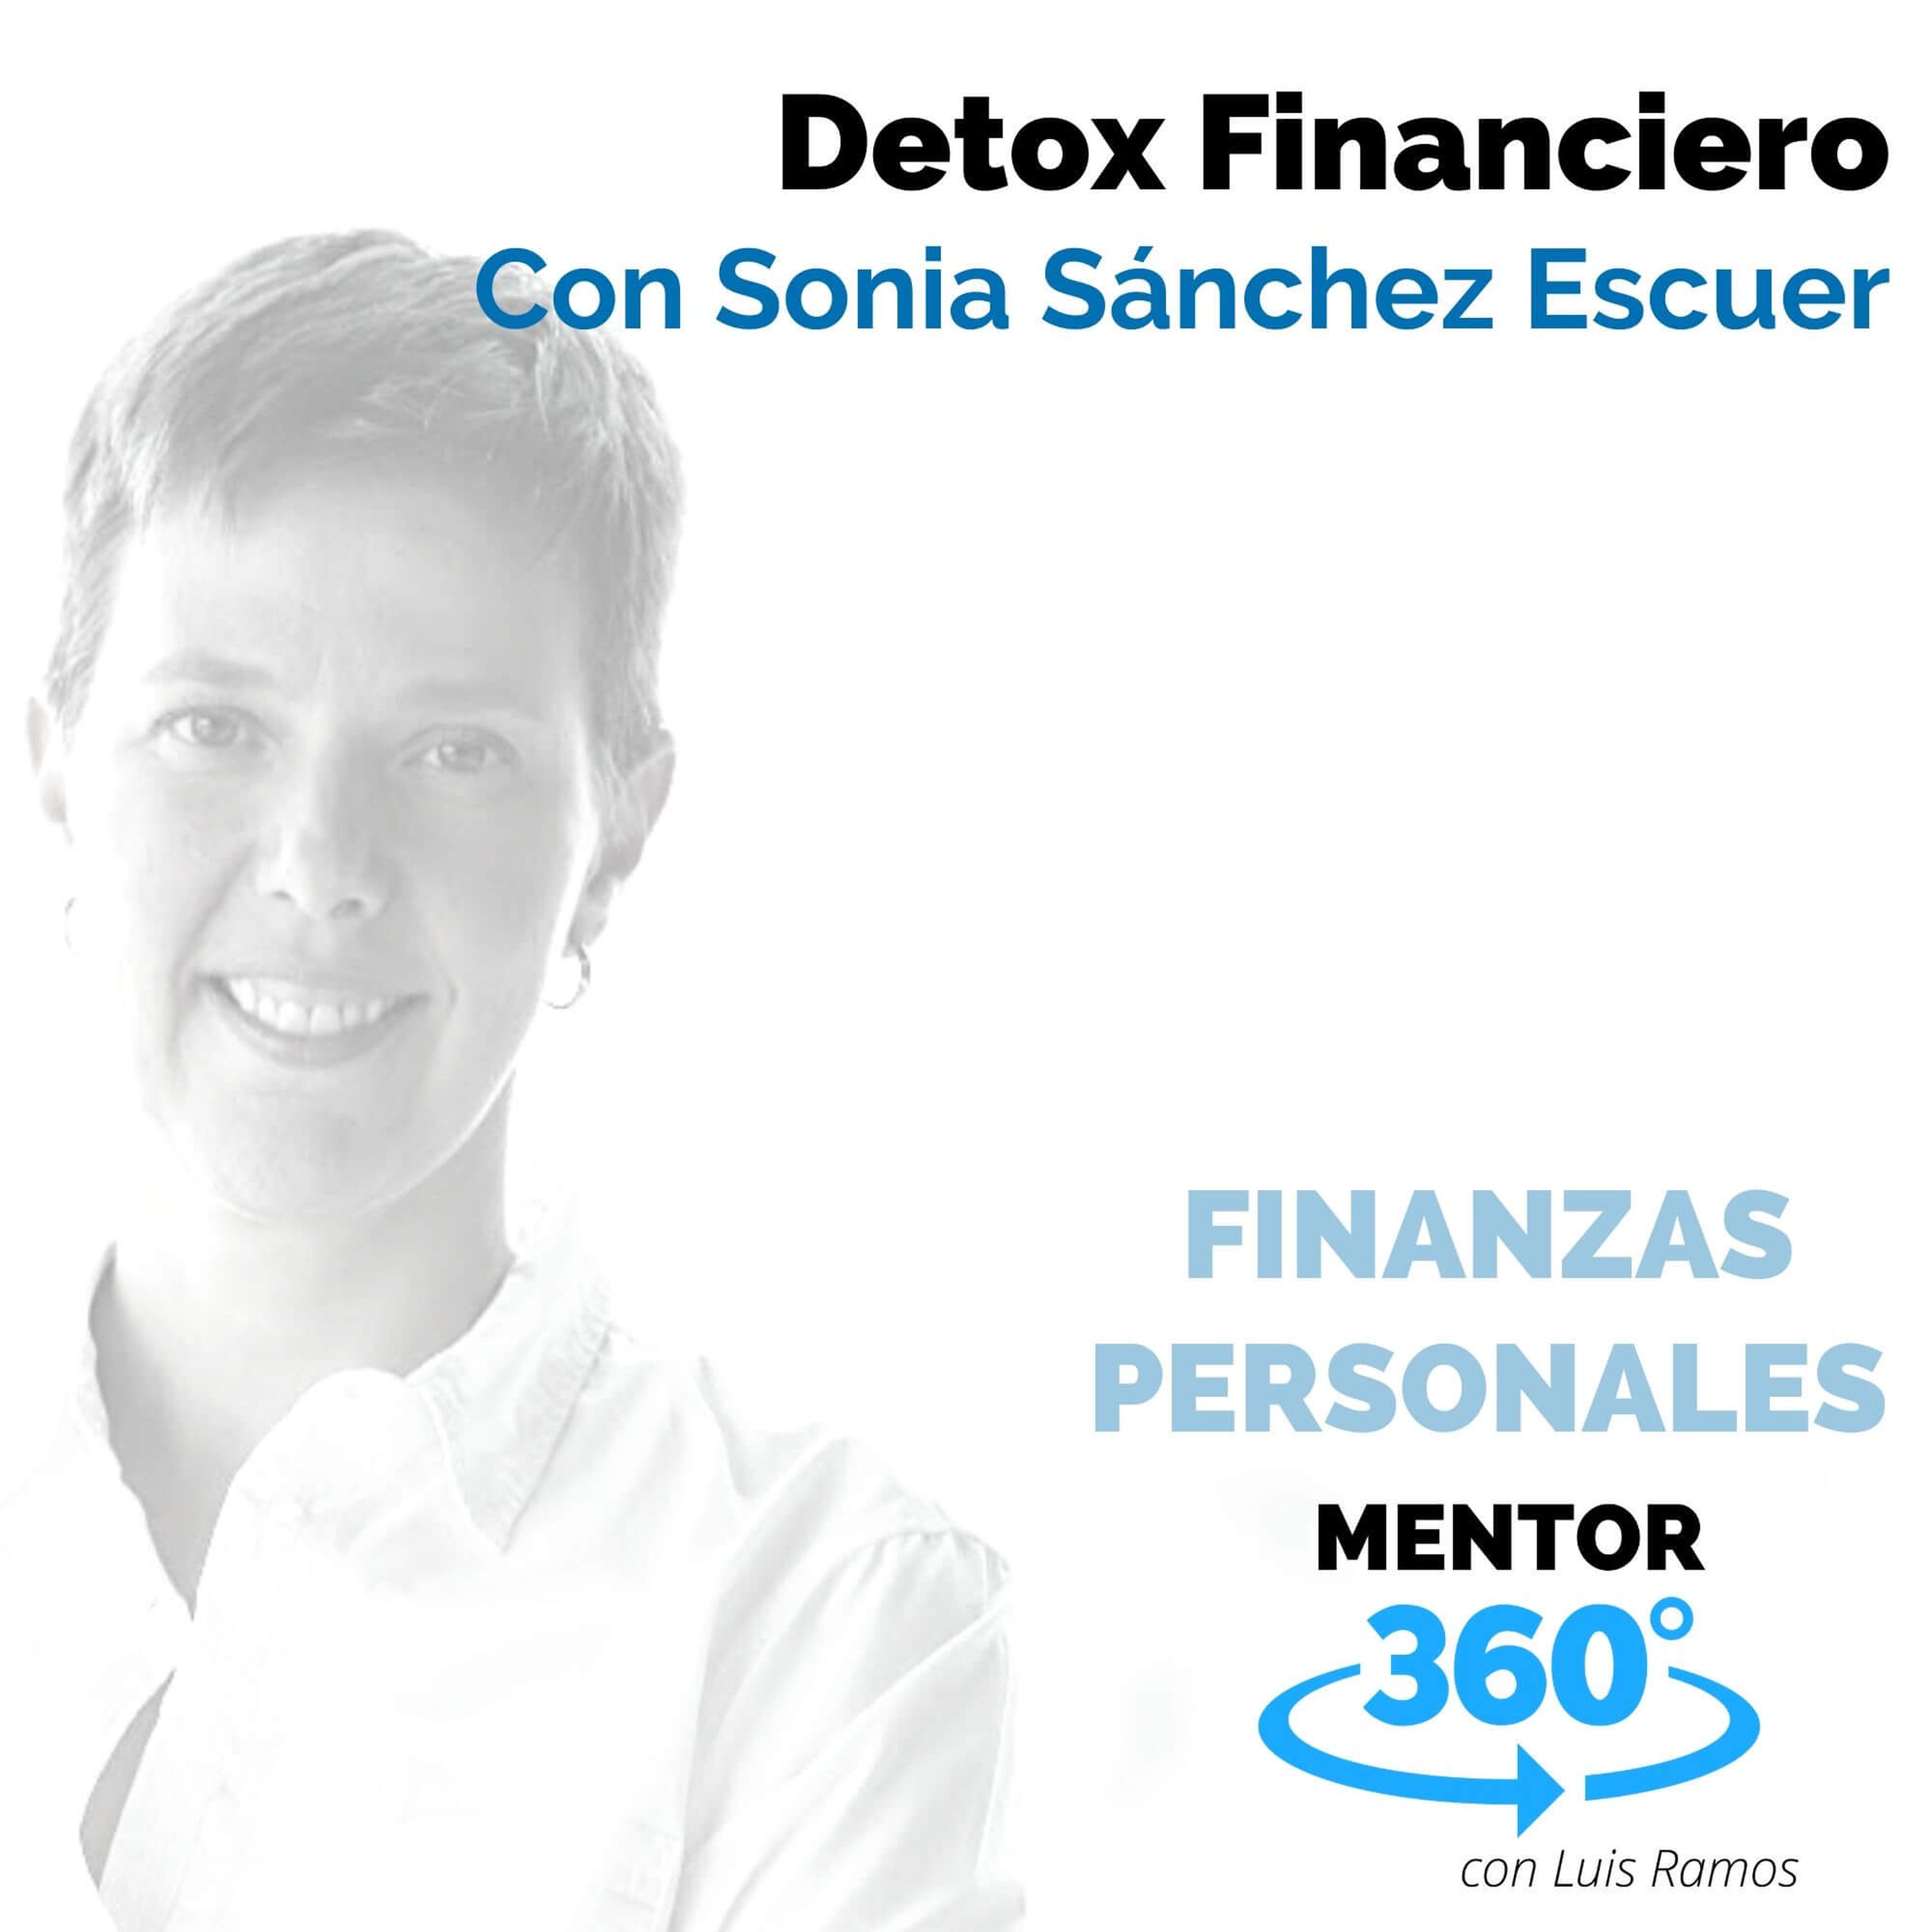 Detox Financiero, con Sonia Sánchez Escuer - FINANZAS PERSONALES